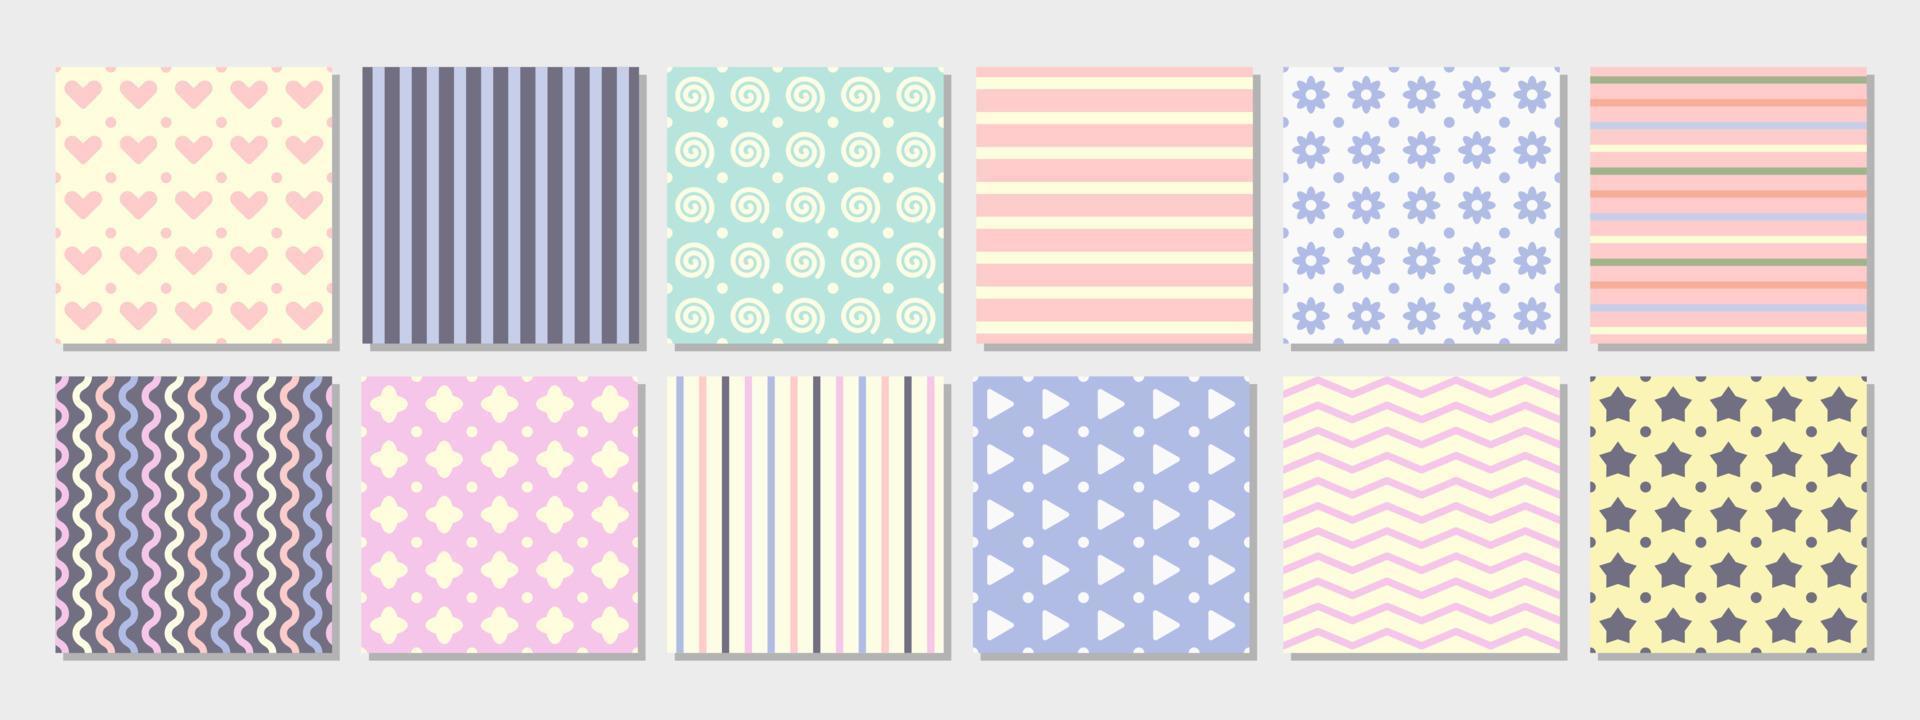 abstrakte nahtlose muster in kombination aus rosa, blauen, hellgelben und weißen pastellfarben. geeignet für Scrapbook, Produktdesign, Verpackung, Verpackung, Hintergrund, Einladung und kreatives Projekt vektor